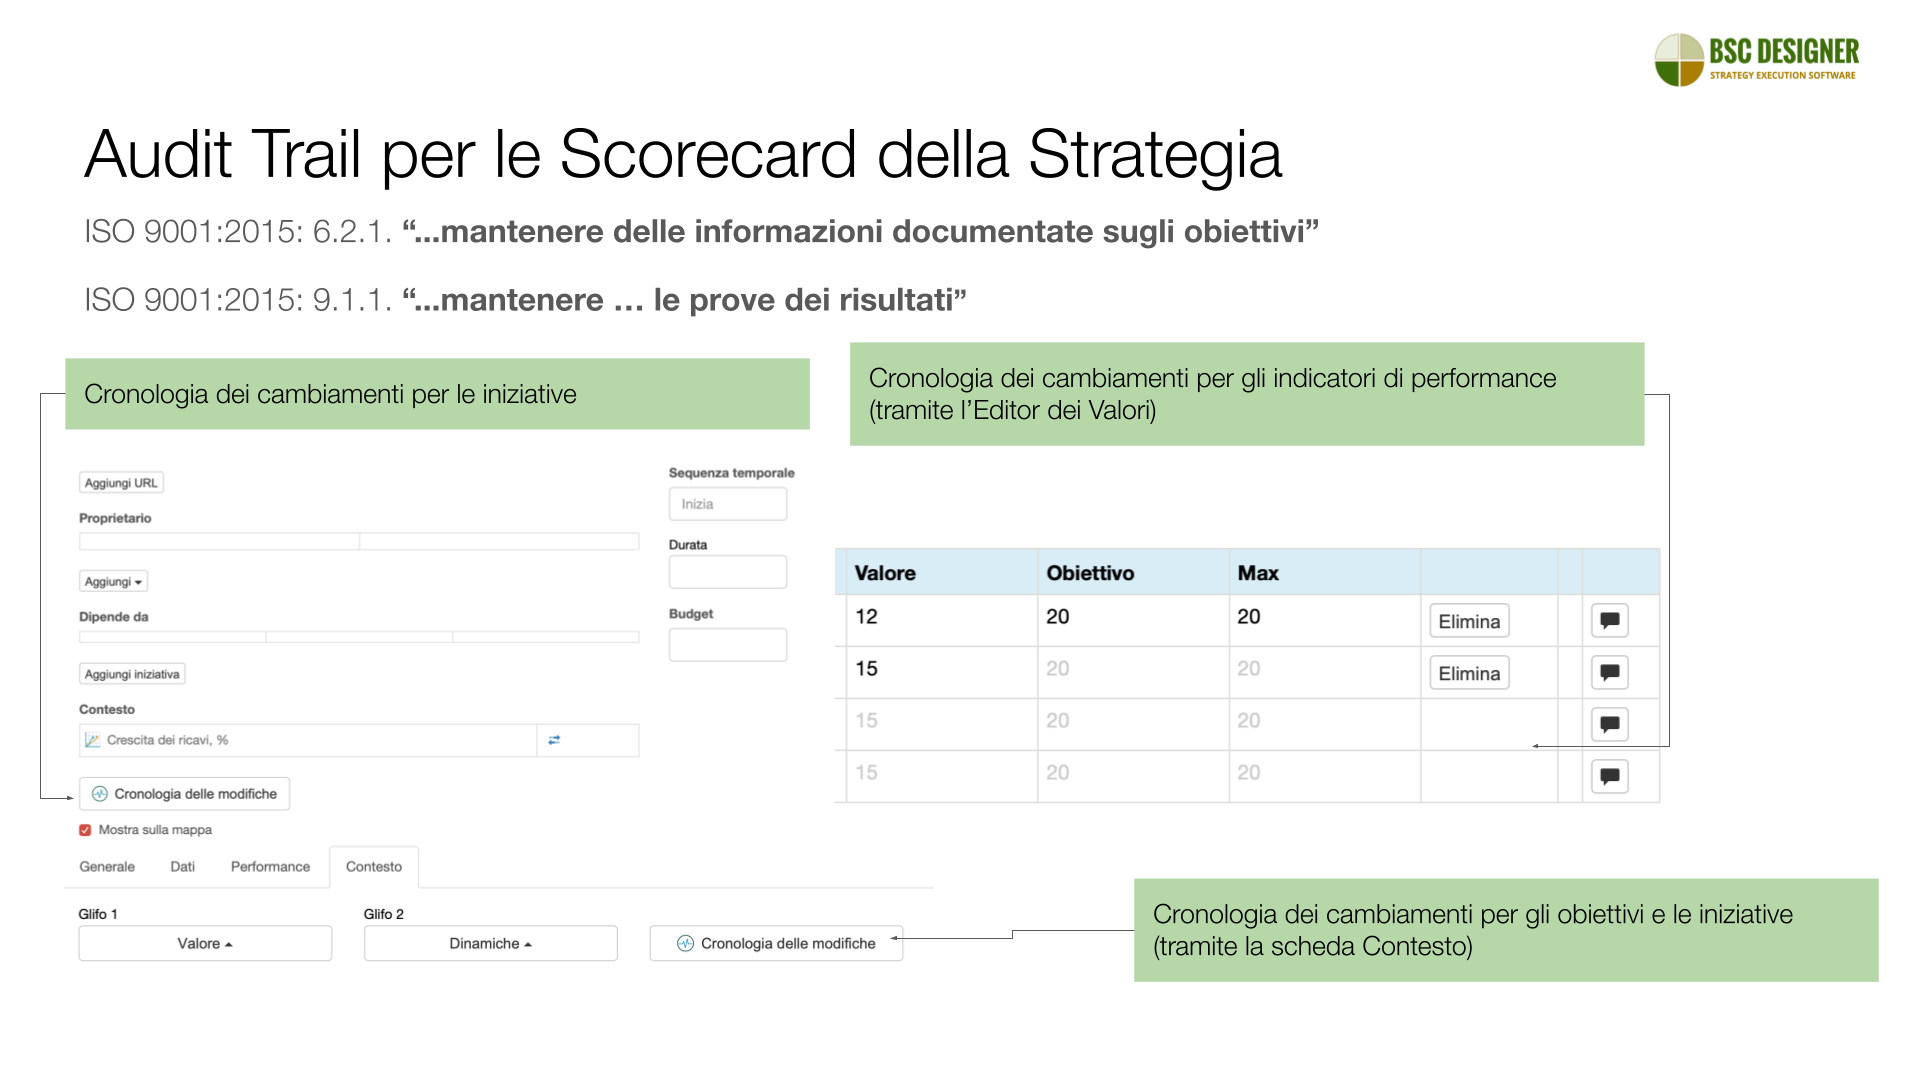 Audit Trail per le Scorecard Strategiche - ISO 9001:2015: 6.2.1., 9.1.1. - mantenere delle prove dei risultati ottenuti